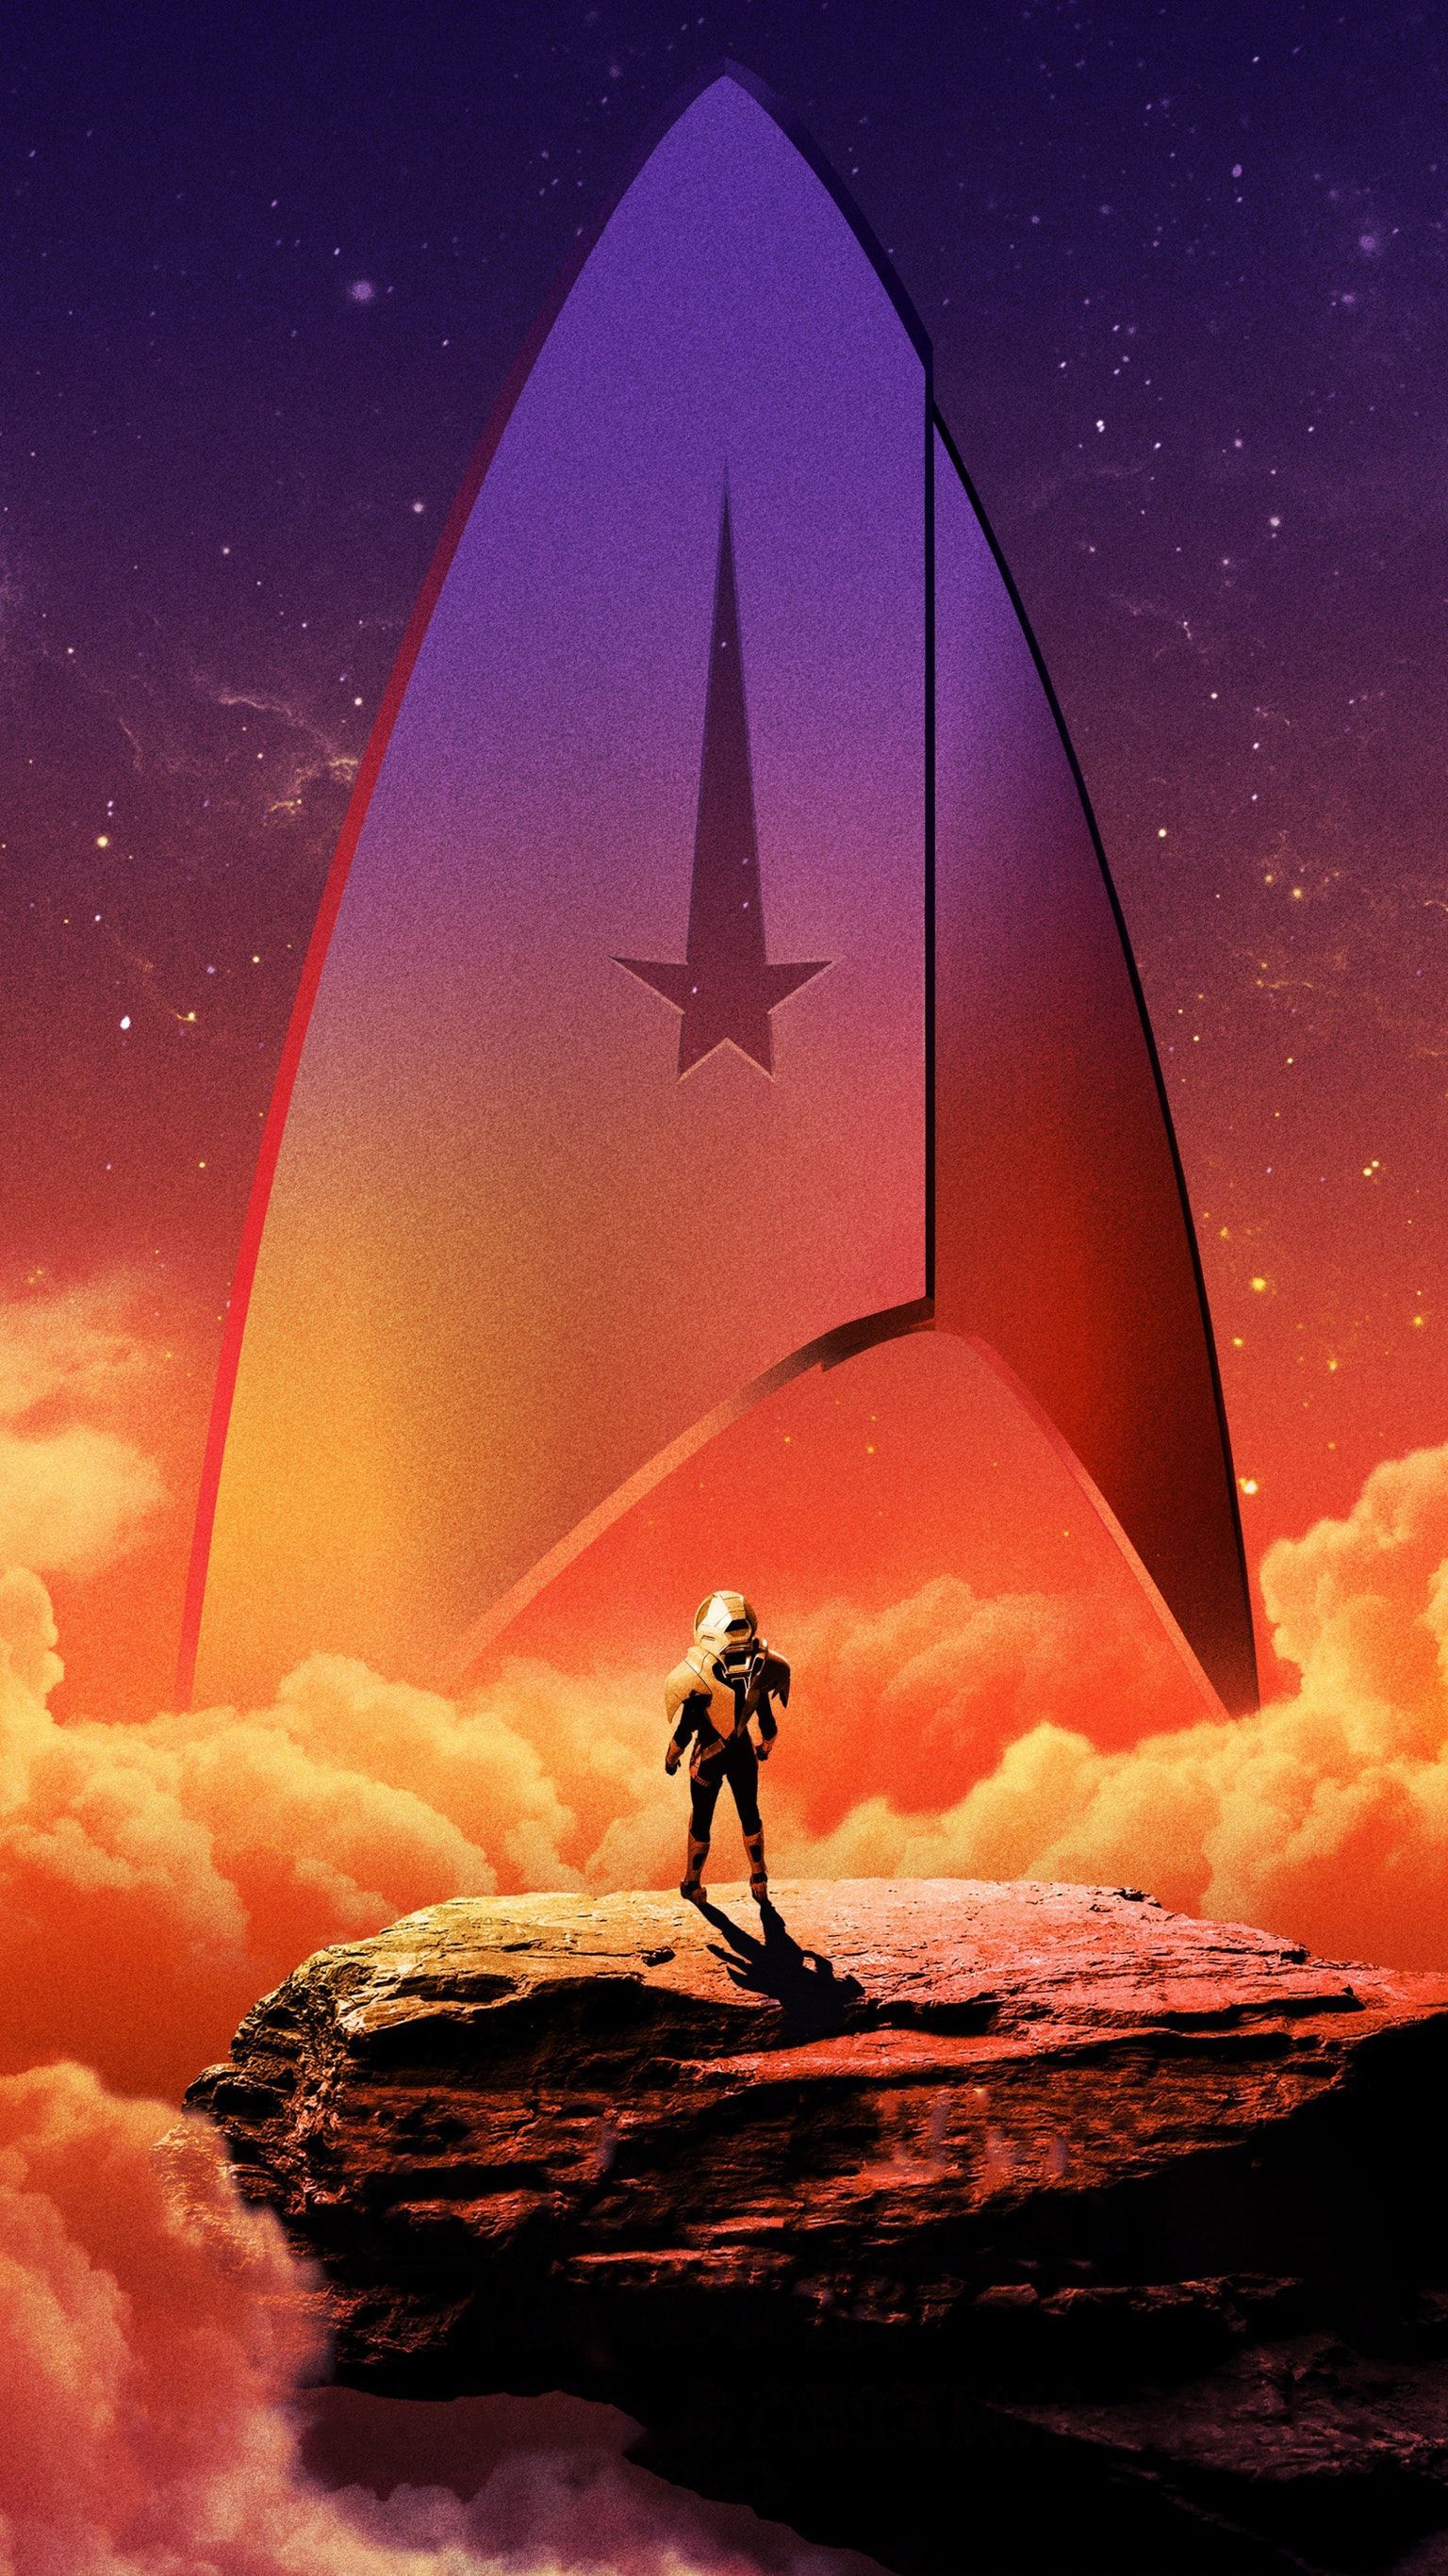 Star Trek image. star trek, trek, star trek ships